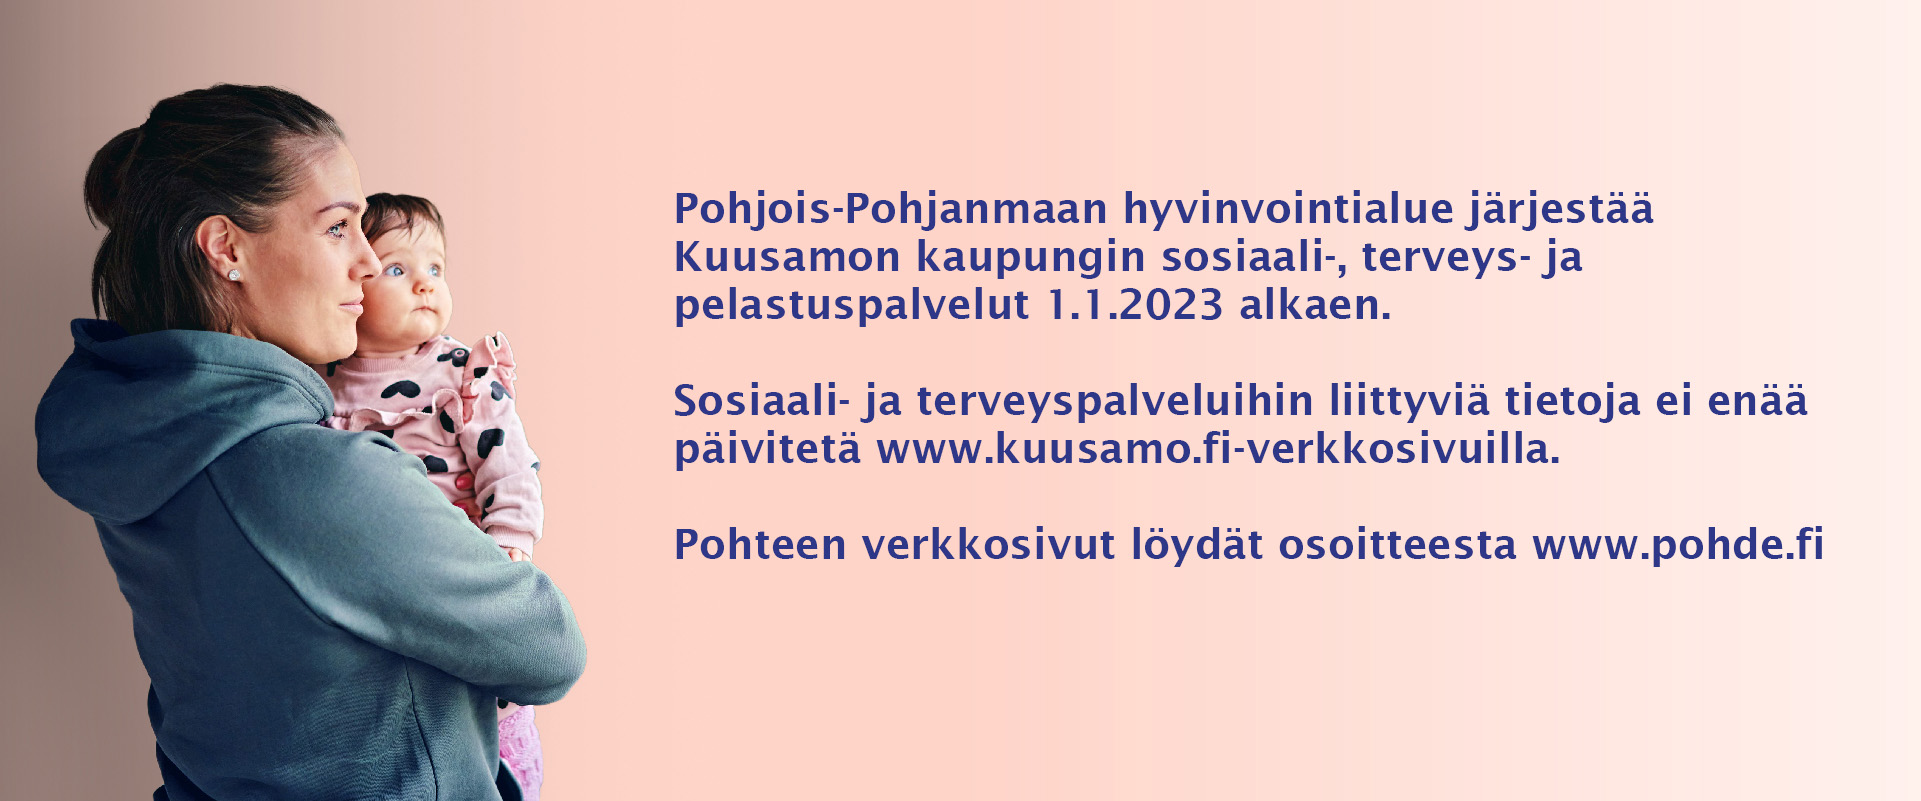 Pohjois-Pohjanmaan hyvinvointialue järjestää Kuusamon kaupungin sosiaali-, terveys- ja pelastuspalvelut 1.1.2023 alkaen. Sosiaali- ja terveyspalveluihin liittyviä tietoja ei enää päivitetä www.kuusamo.fi-verkkosivuilla. Pohteen verkkosivut löydät osoitteesta www.pohde.fi